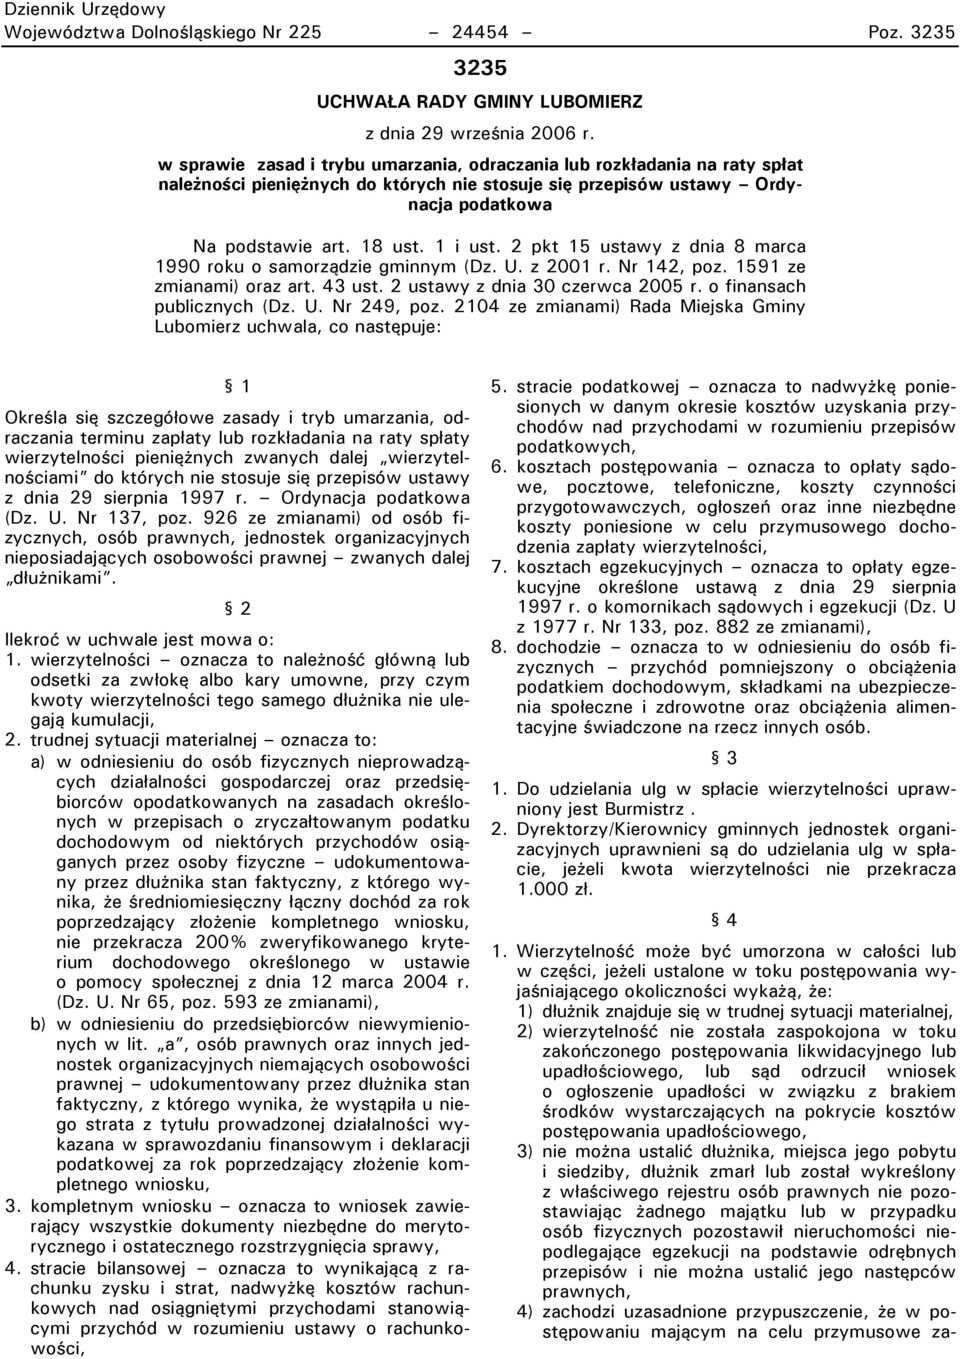 2 pkt 15 ustawy z dnia 8 marca 1990 roku o samorządzie gminnym (Dz. U. z 2001 r. Nr 142, poz. 1591 ze zmianami) oraz art. 43 ust. 2 ustawy z dnia 30 czerwca 2005 r. o finansach publicznych (Dz. U. Nr 249, poz.